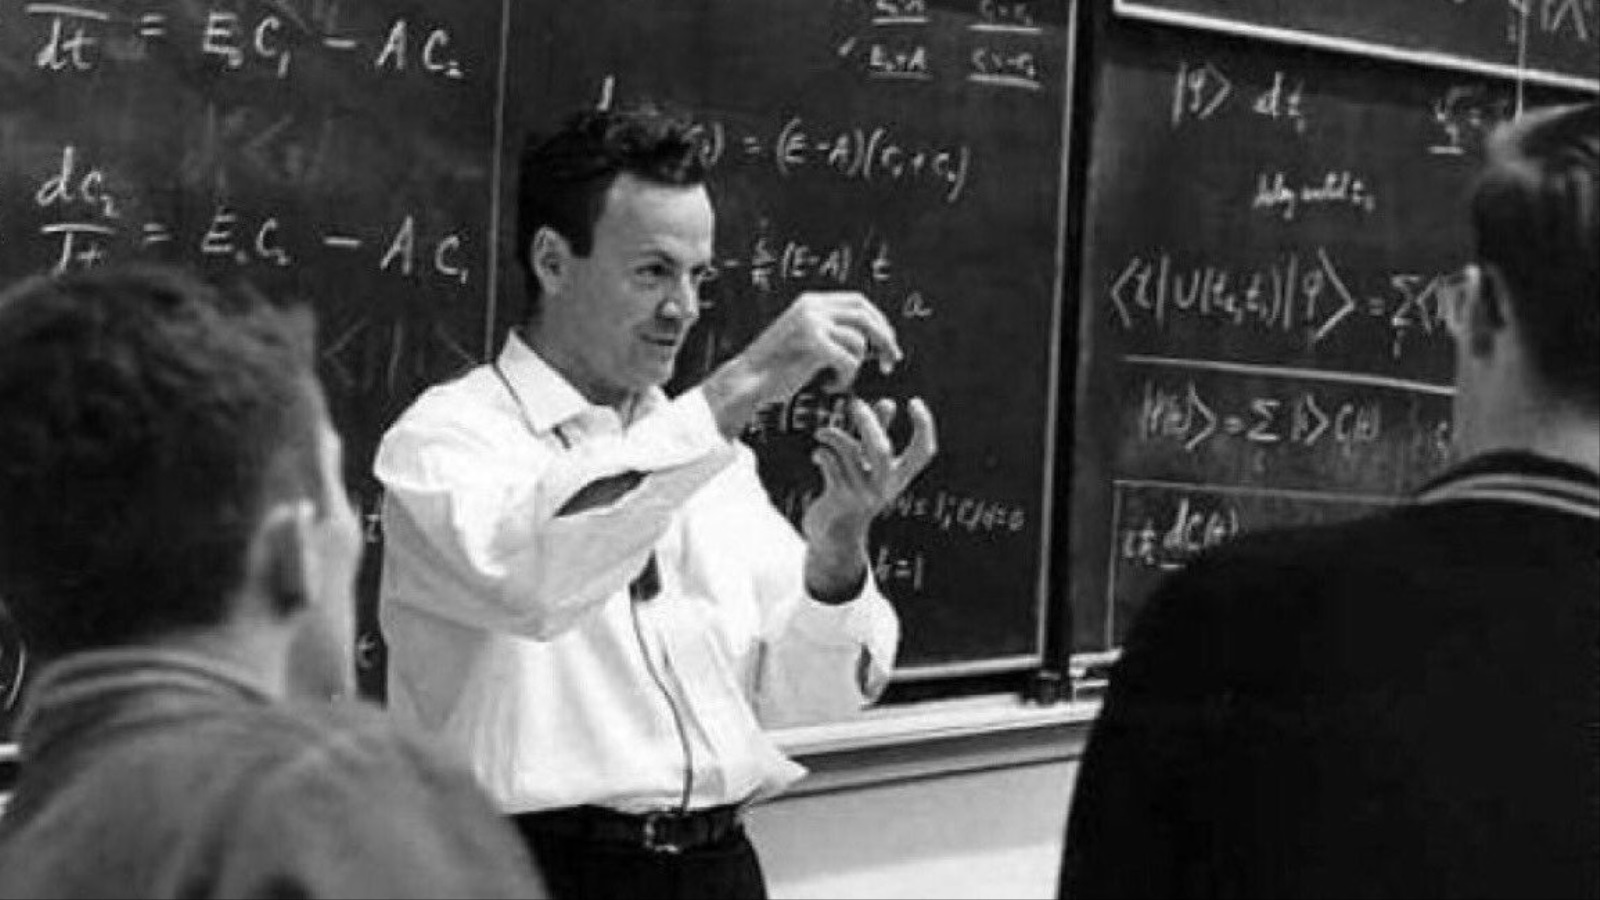 انطلق فاينمان، كأحد روّاد الرؤية الكمومية للعالم، لينتقد الفلسفة بوضوح وصراحة، لكنه لم يعن الفلسفة بصورتها العامة